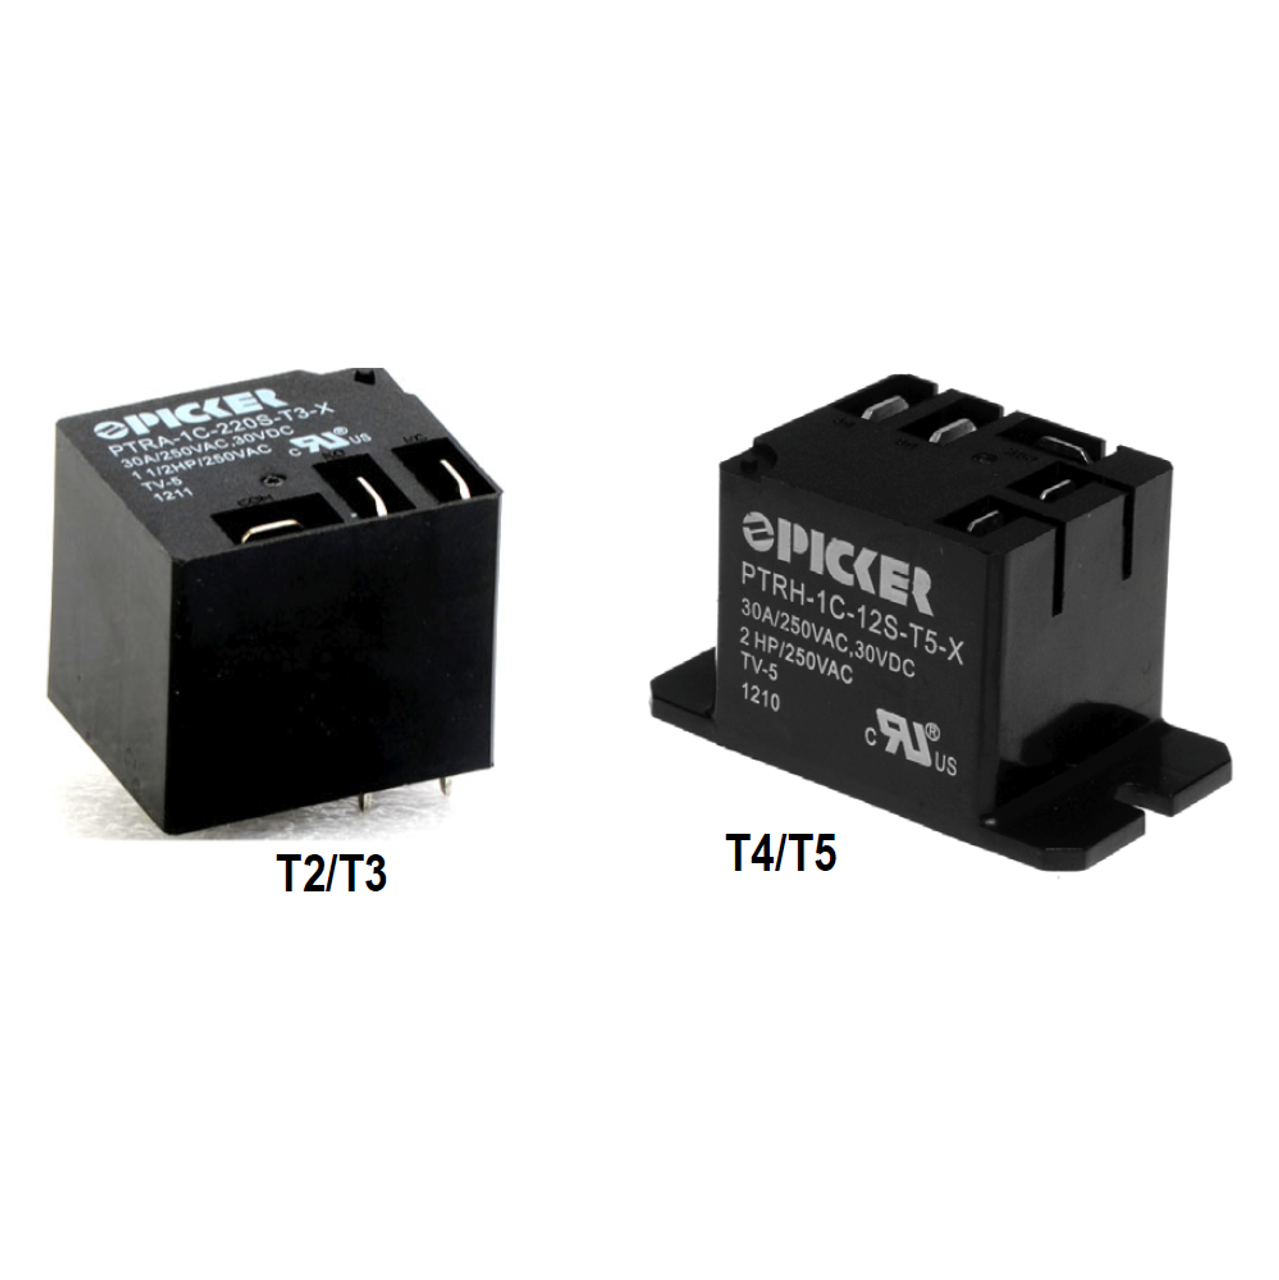 Picker PTRH-1C-110SF-T2-XA0.6G Power Relays